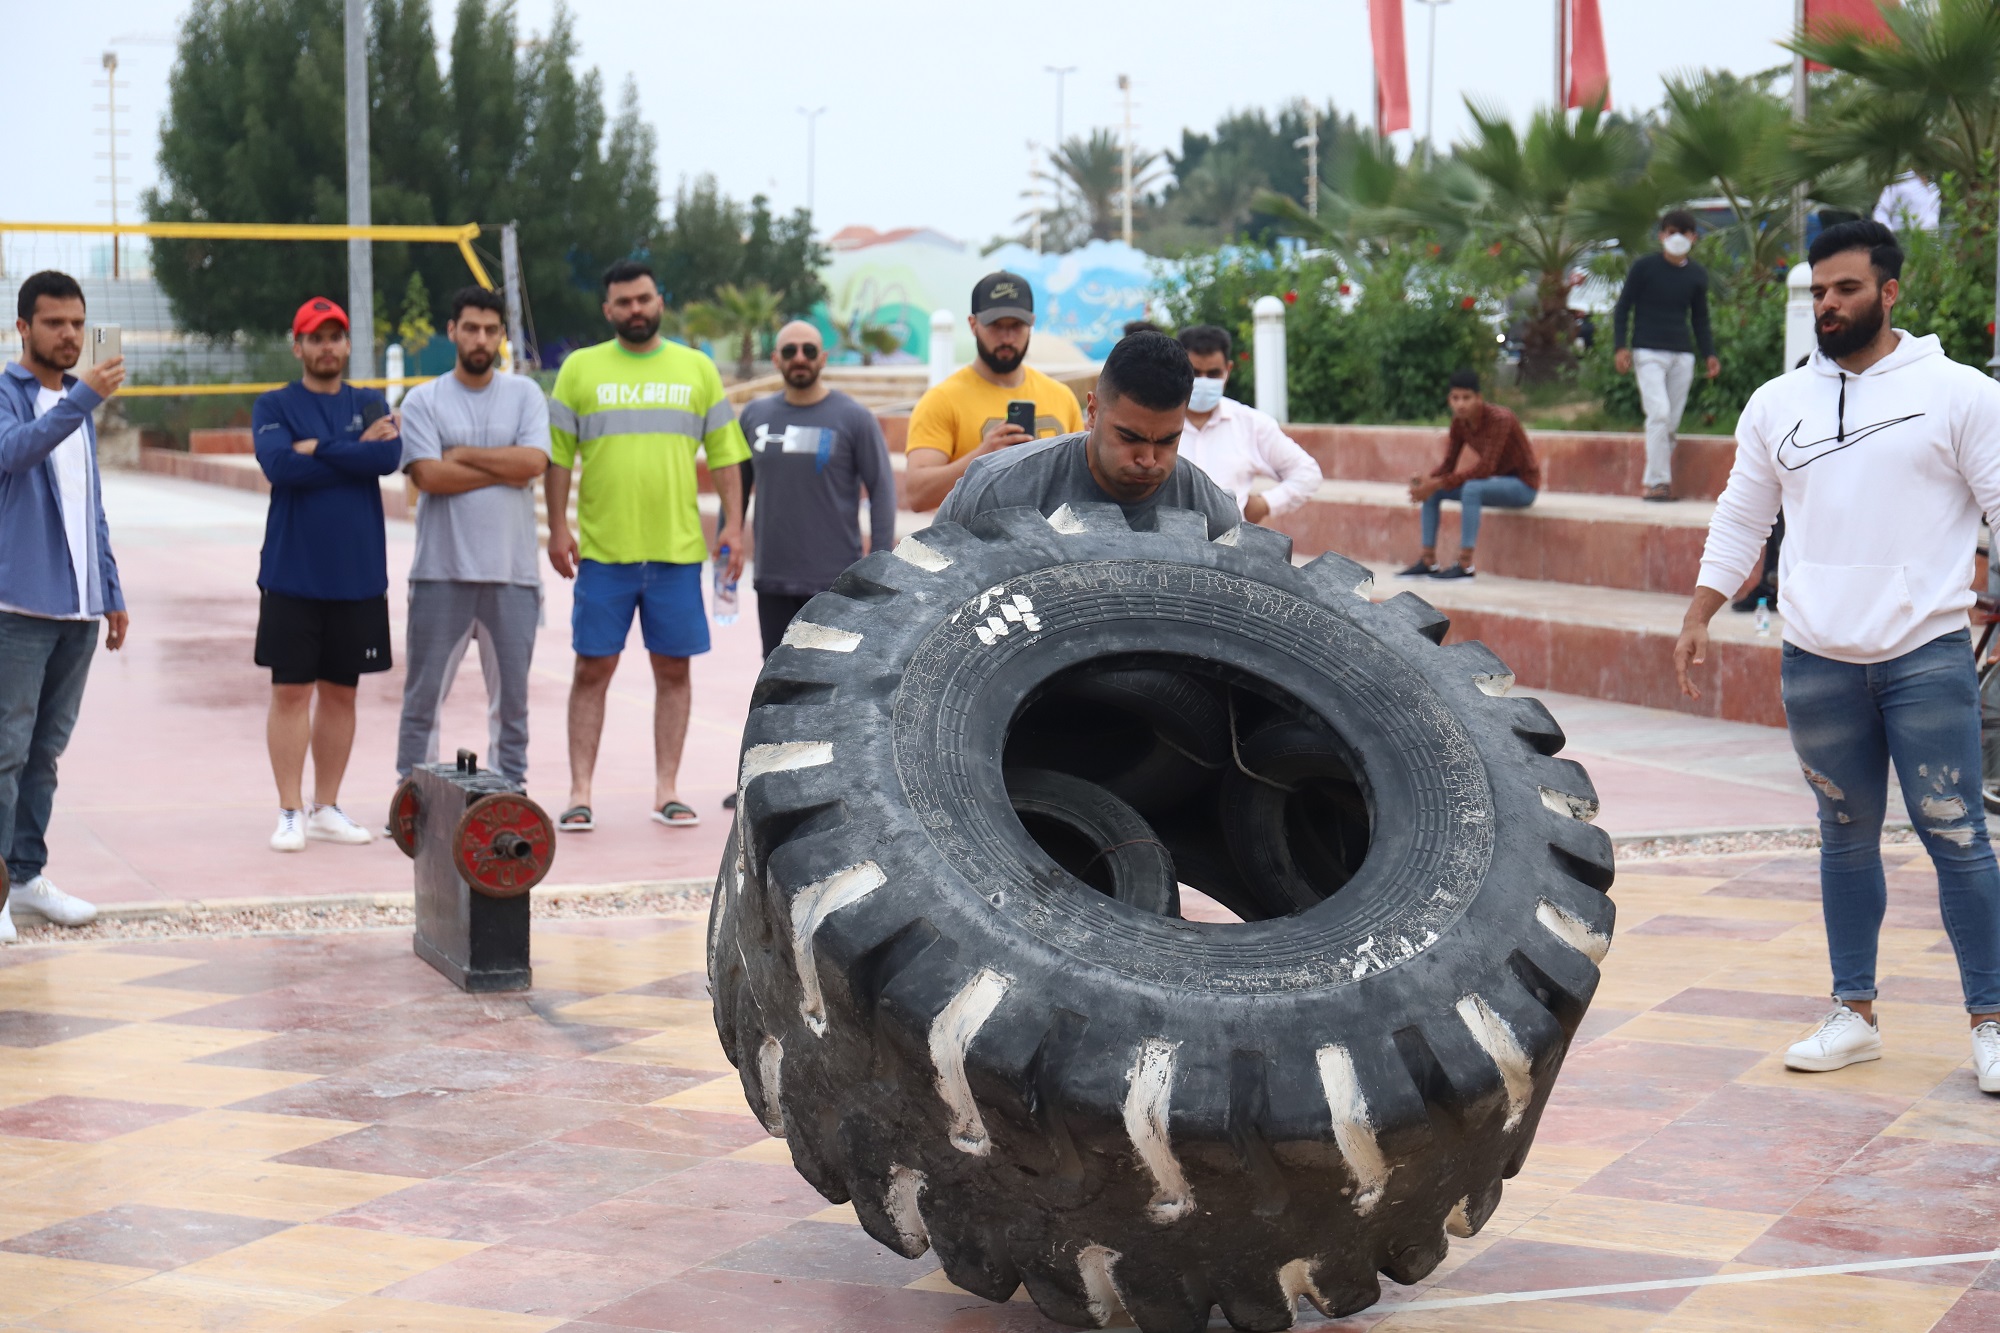 برگزاری اولین دوره مسابقات قوی ترین مردان در کیش